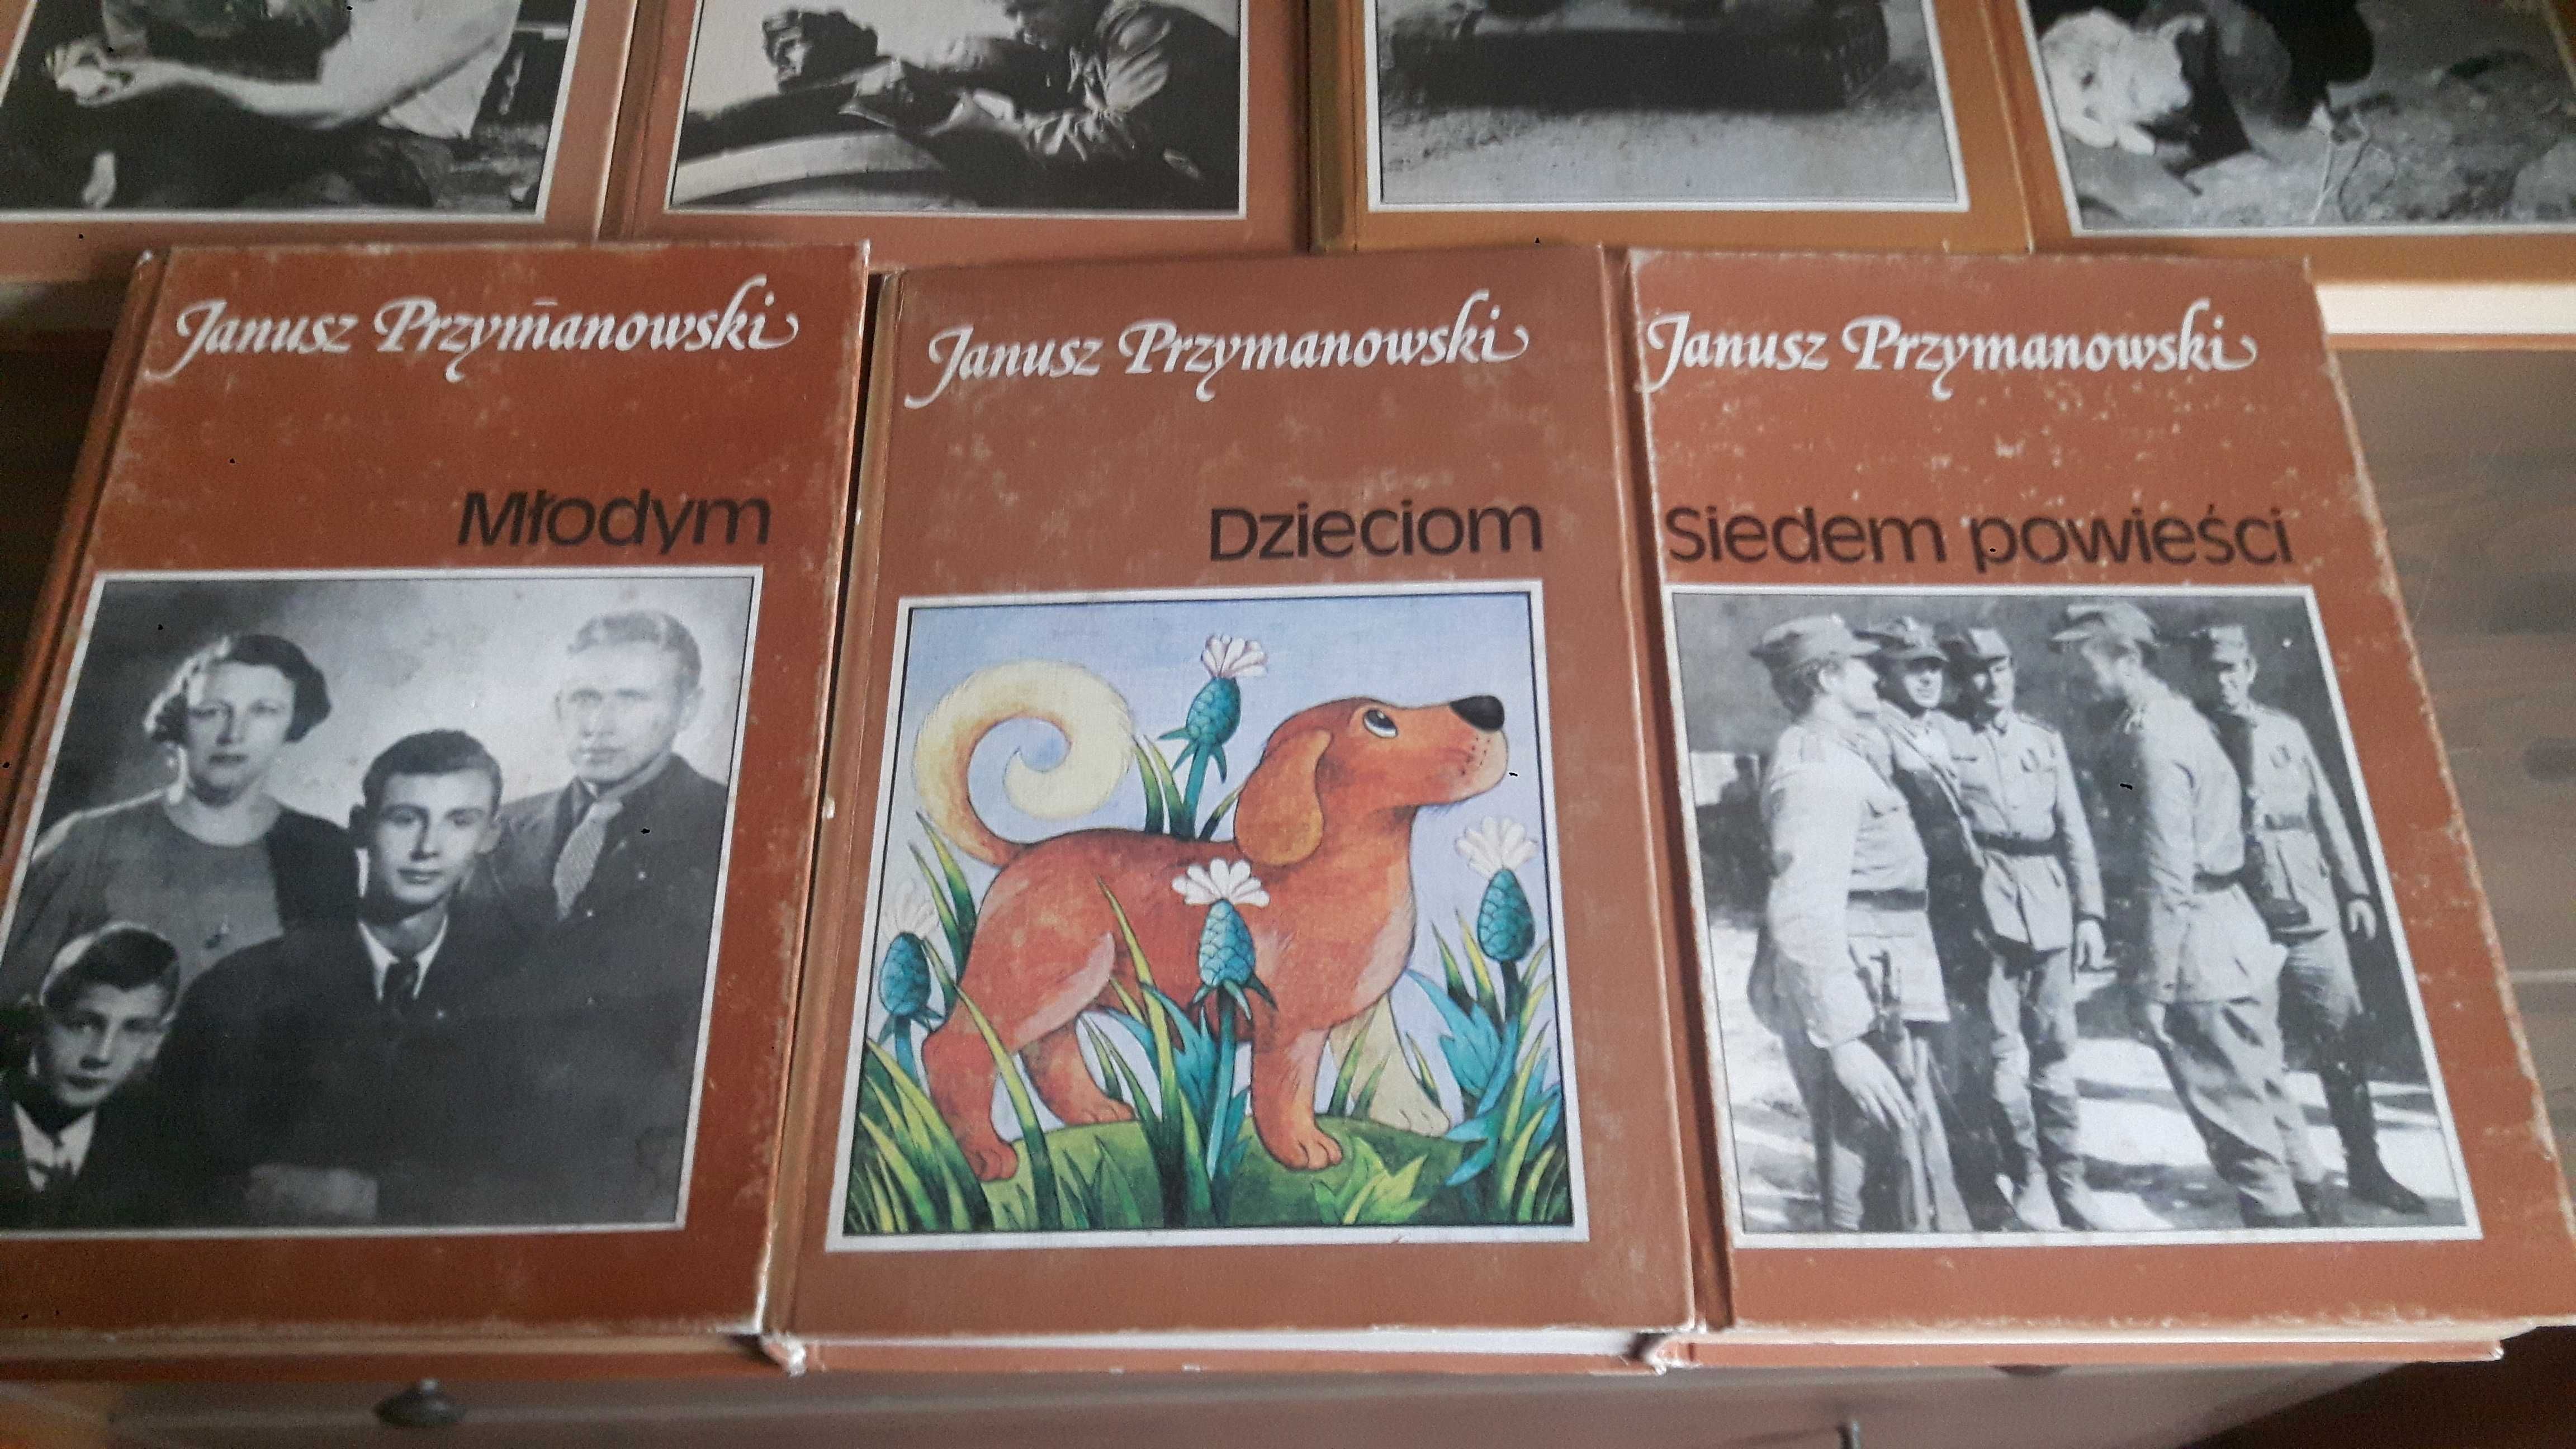 Przymanowski x 7 Czterej pancerni i pies,Studzianki,Dzieciom,Młodym